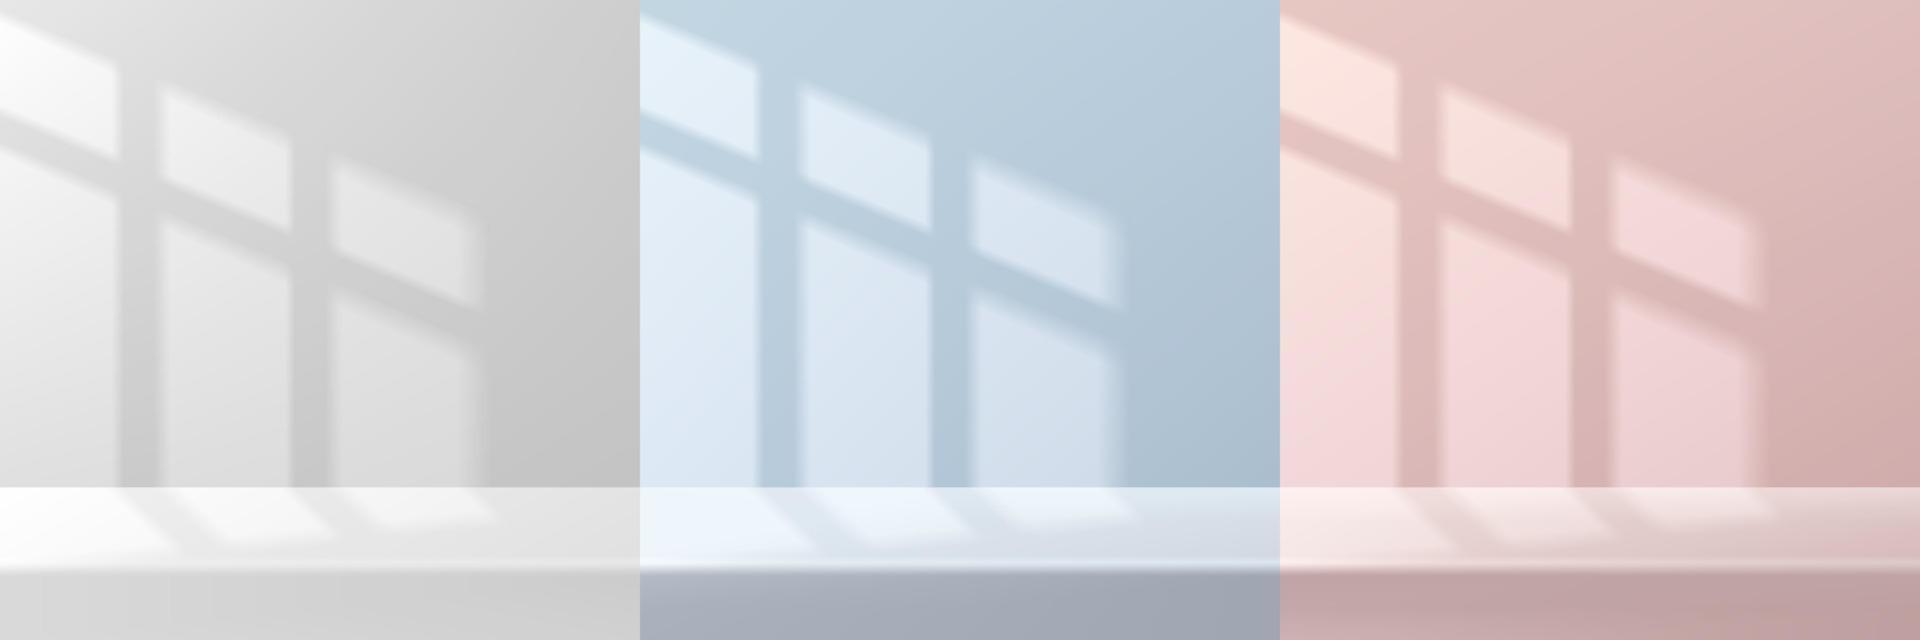 ensemble de salle 3d abstraite blanche, rose, bleue et bureau ou tables avec lumière et ombre de fenêtre. collection de scènes minimales pastel. formes géométriques de rendu vectoriel pour l'affichage du produit de maquette. vitrine de scène.